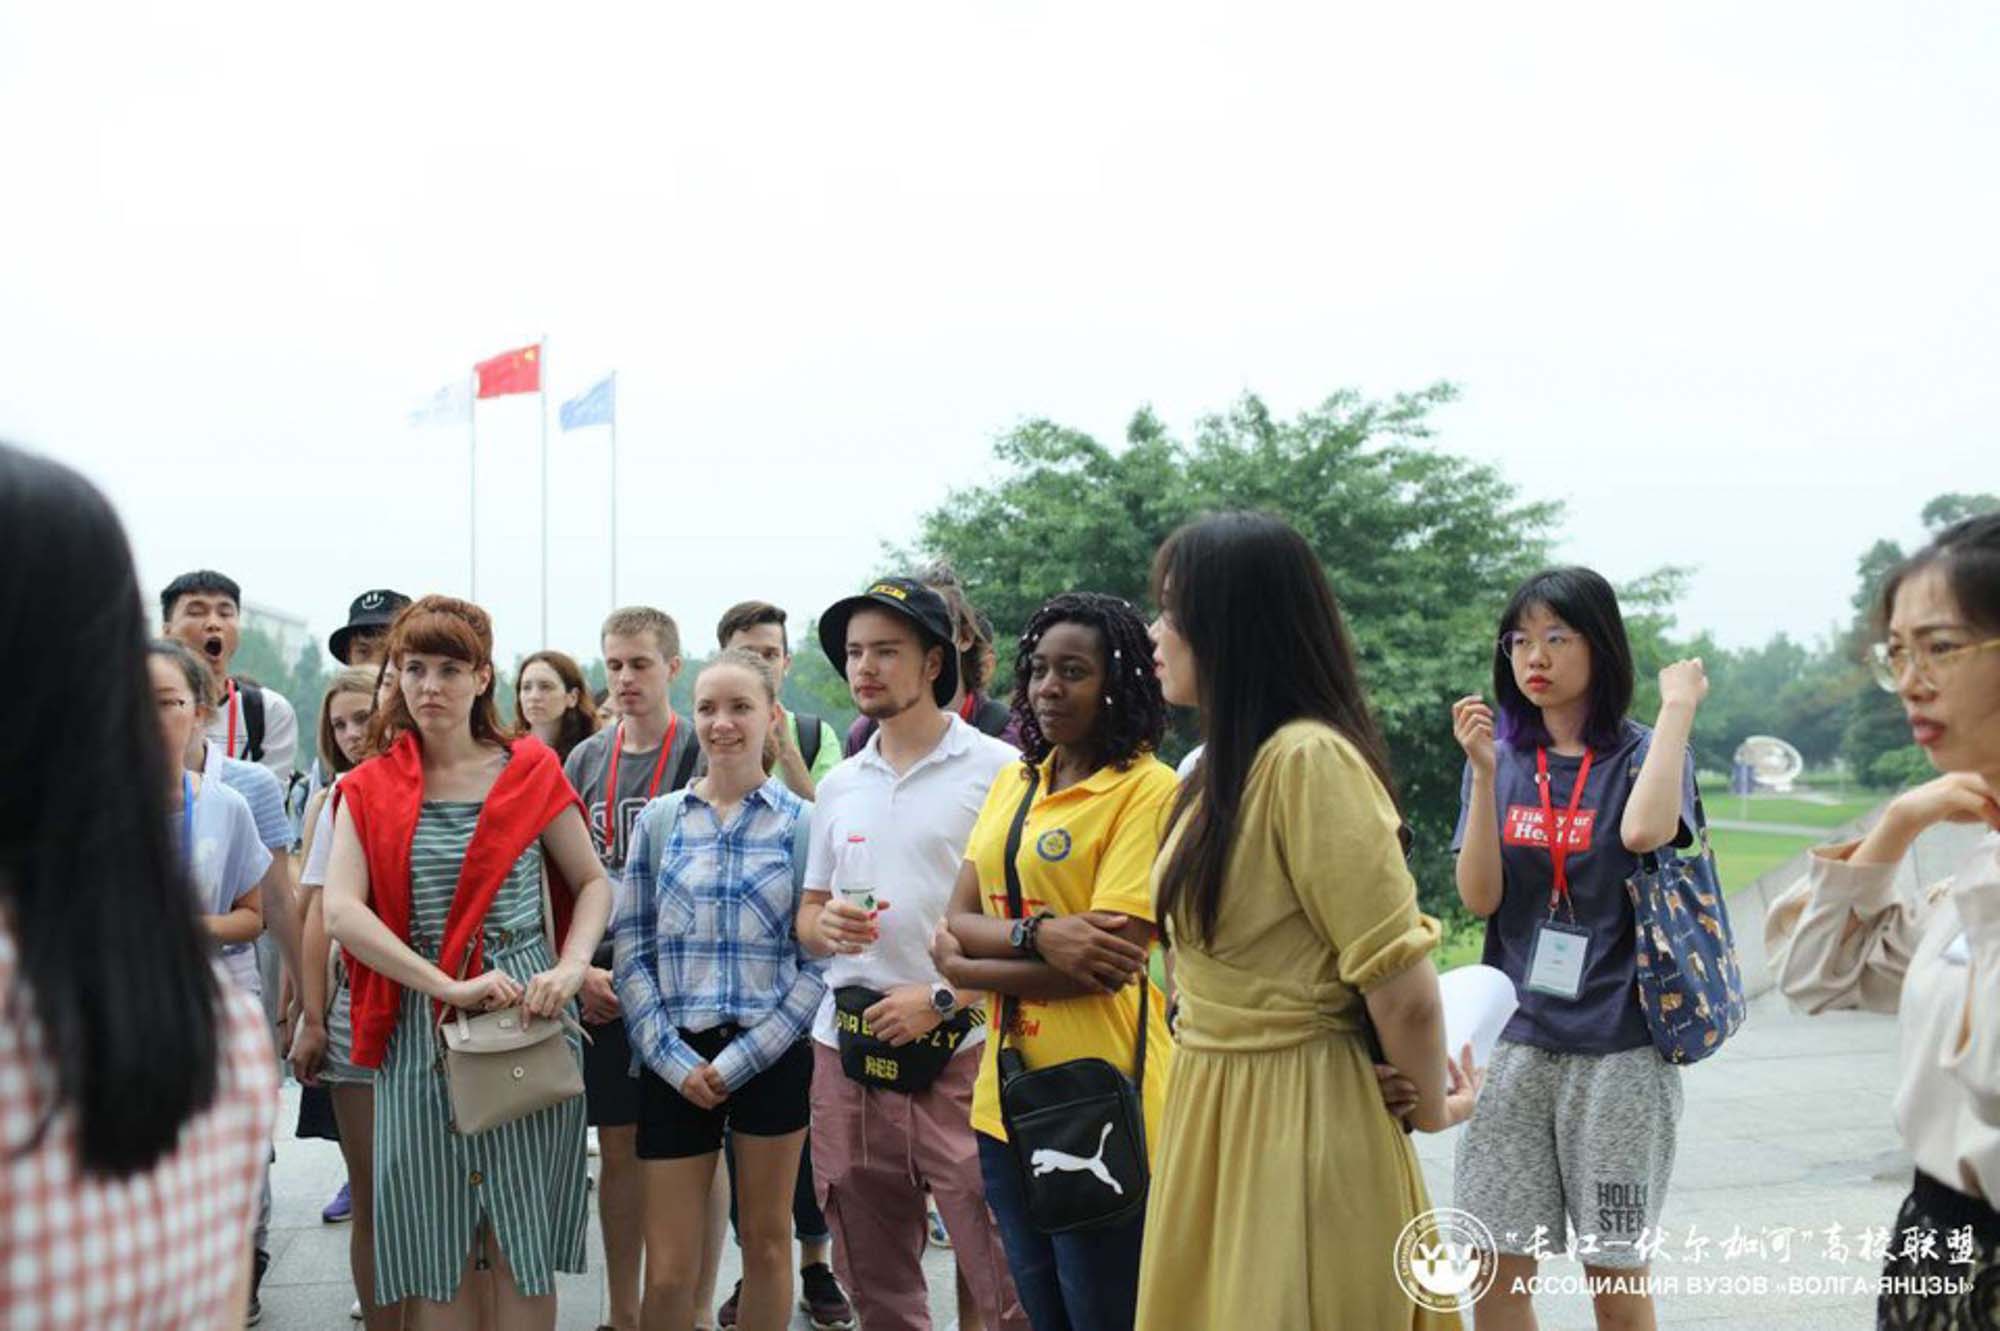 Студенты Мининского университета заняли 3 место в международном конкурсе видеороликов ассоциации вузов «Волга-Янцзы» в г. Чэнду (КНР) 